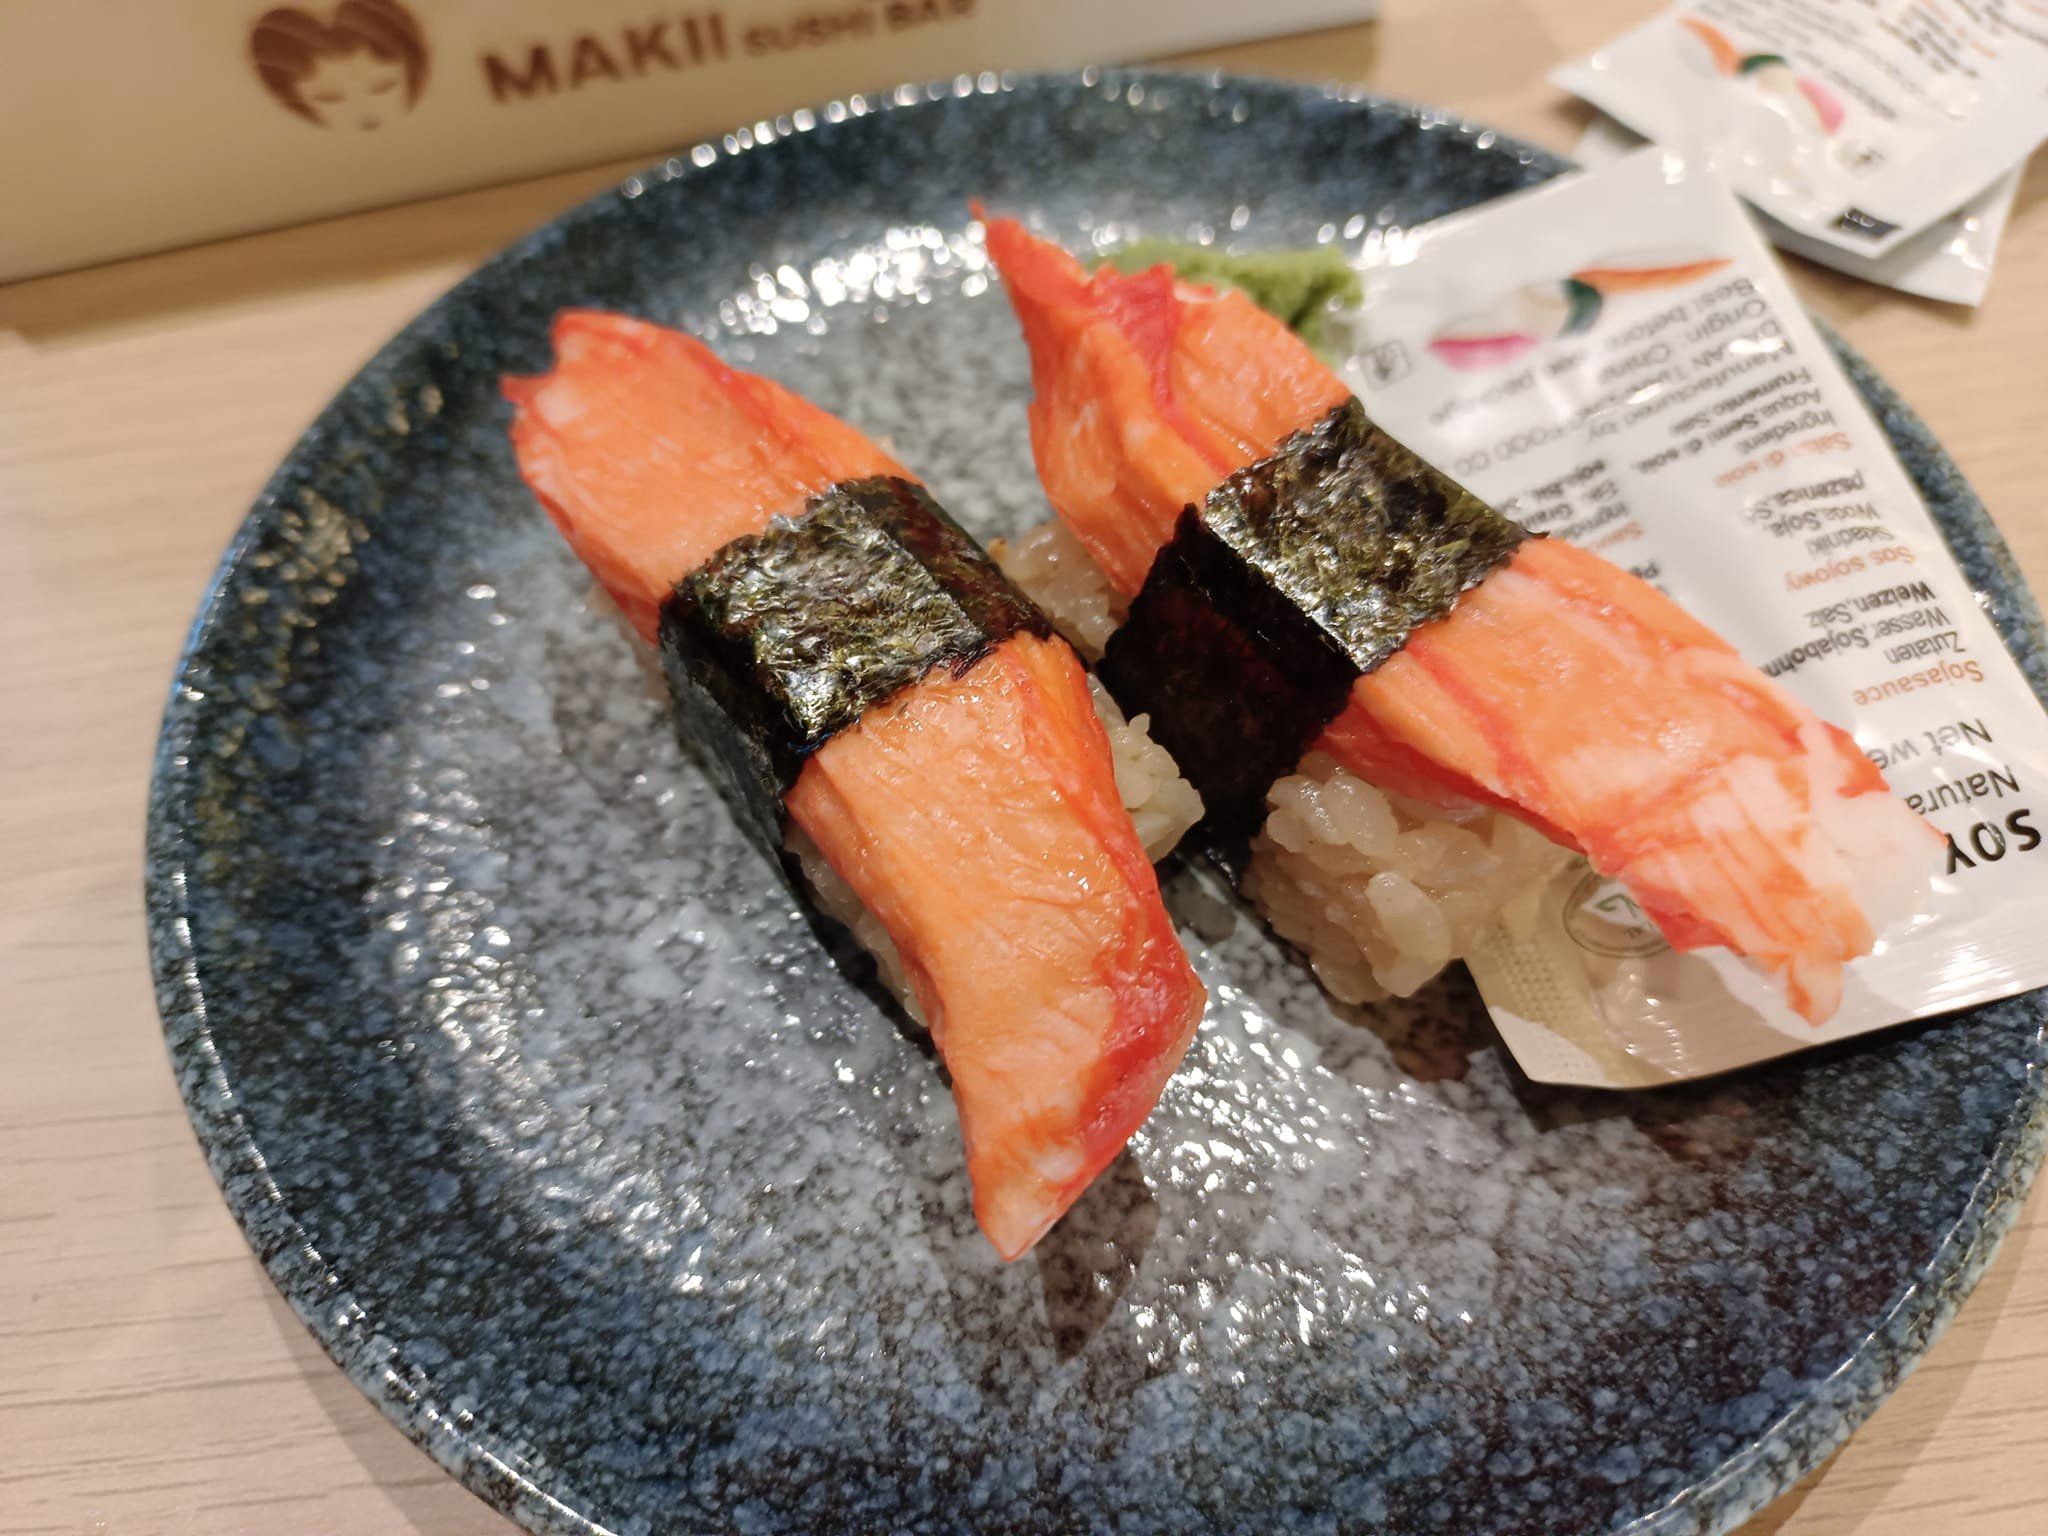 Makii Sushi